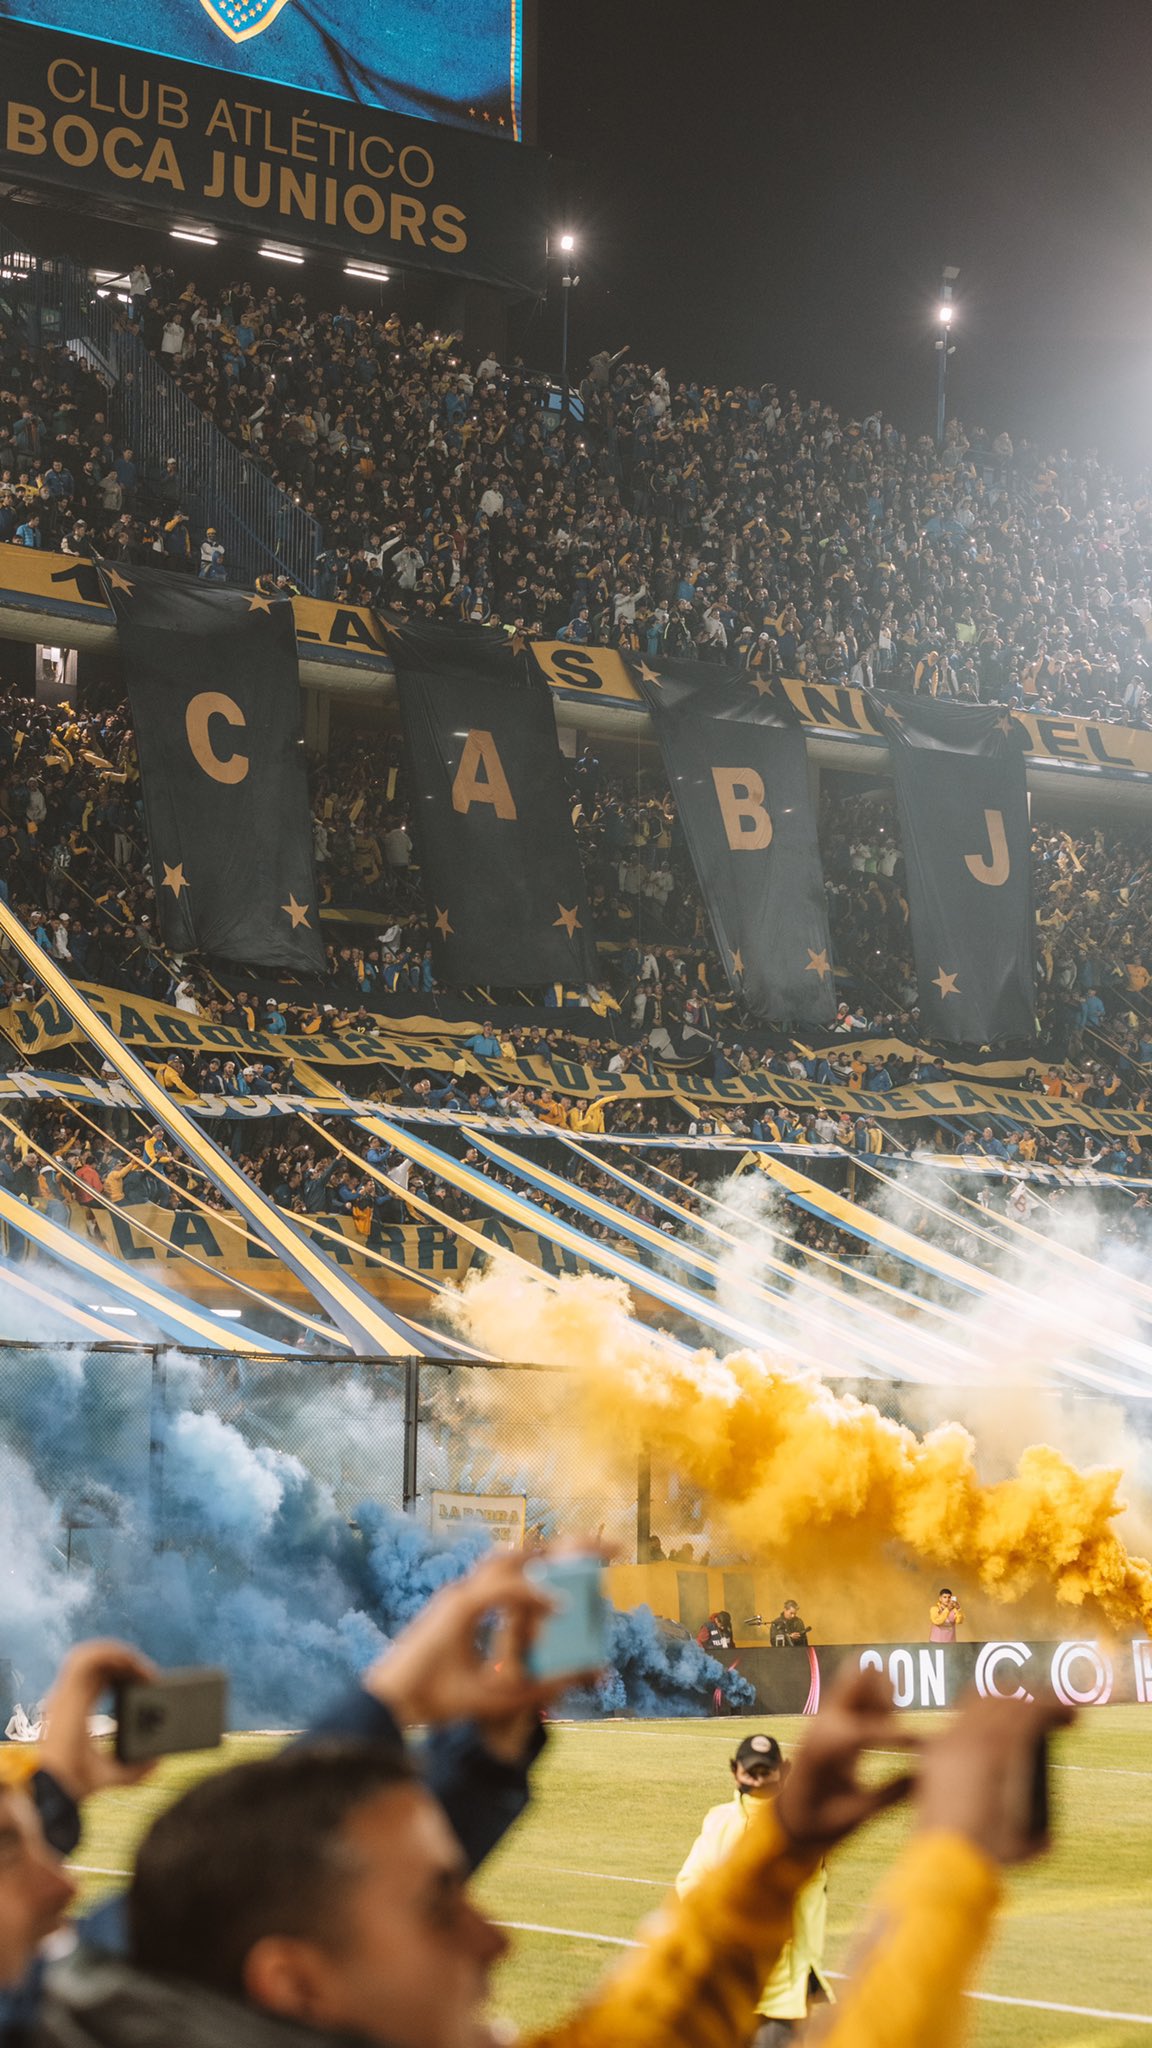 Planeta Boca Juniors on Twitter: 